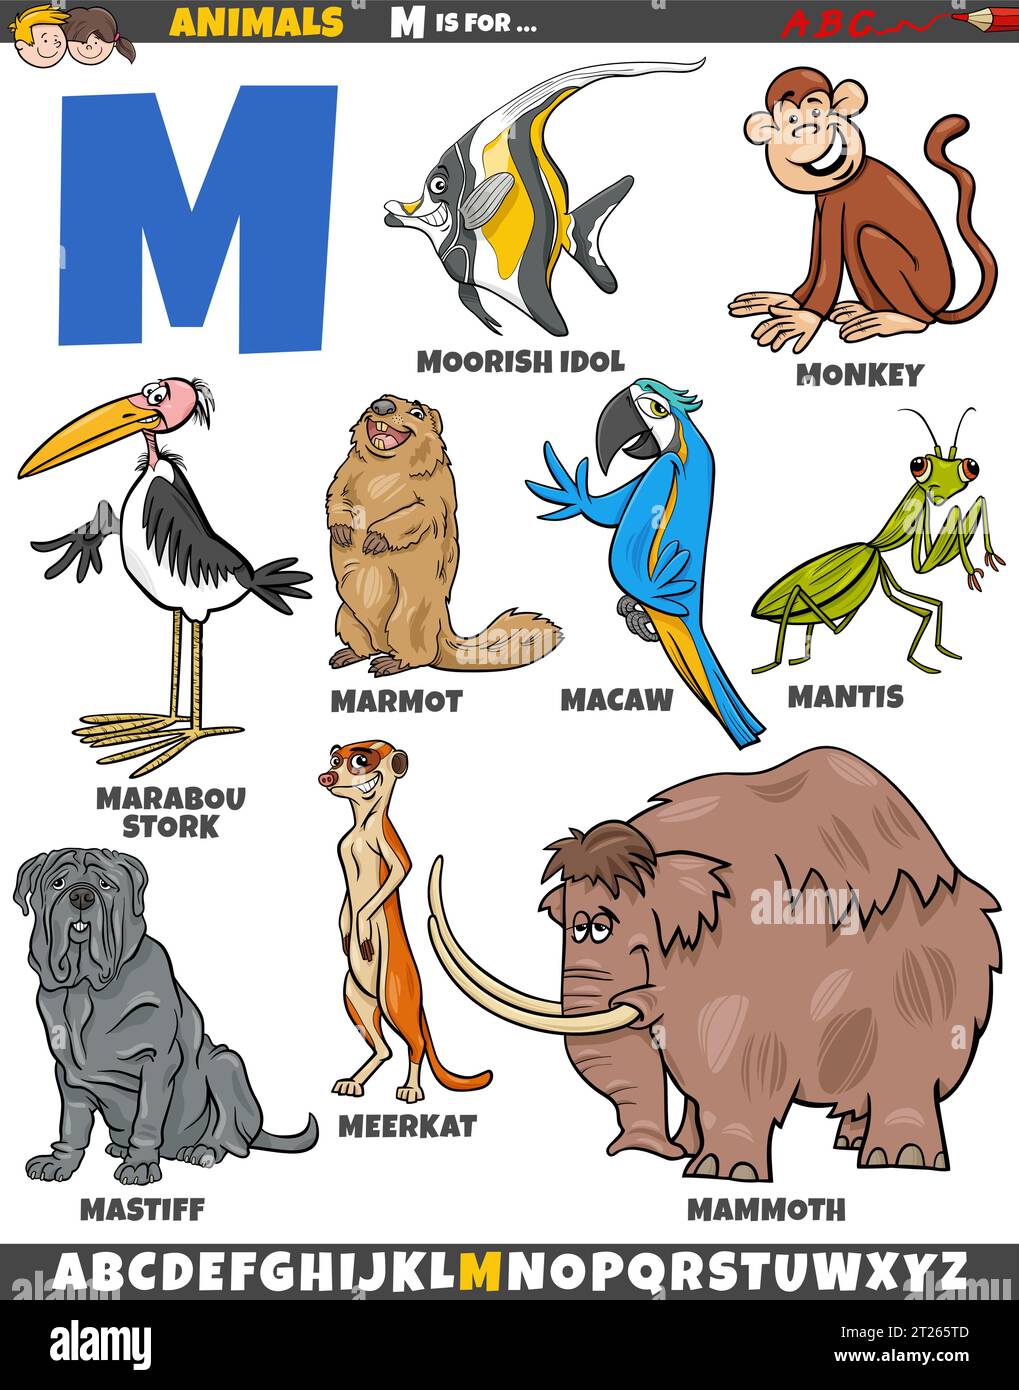 Zeichentrickillustration von Tierfiguren, die für den Buchstaben M gesetzt wurden Stock Vektor